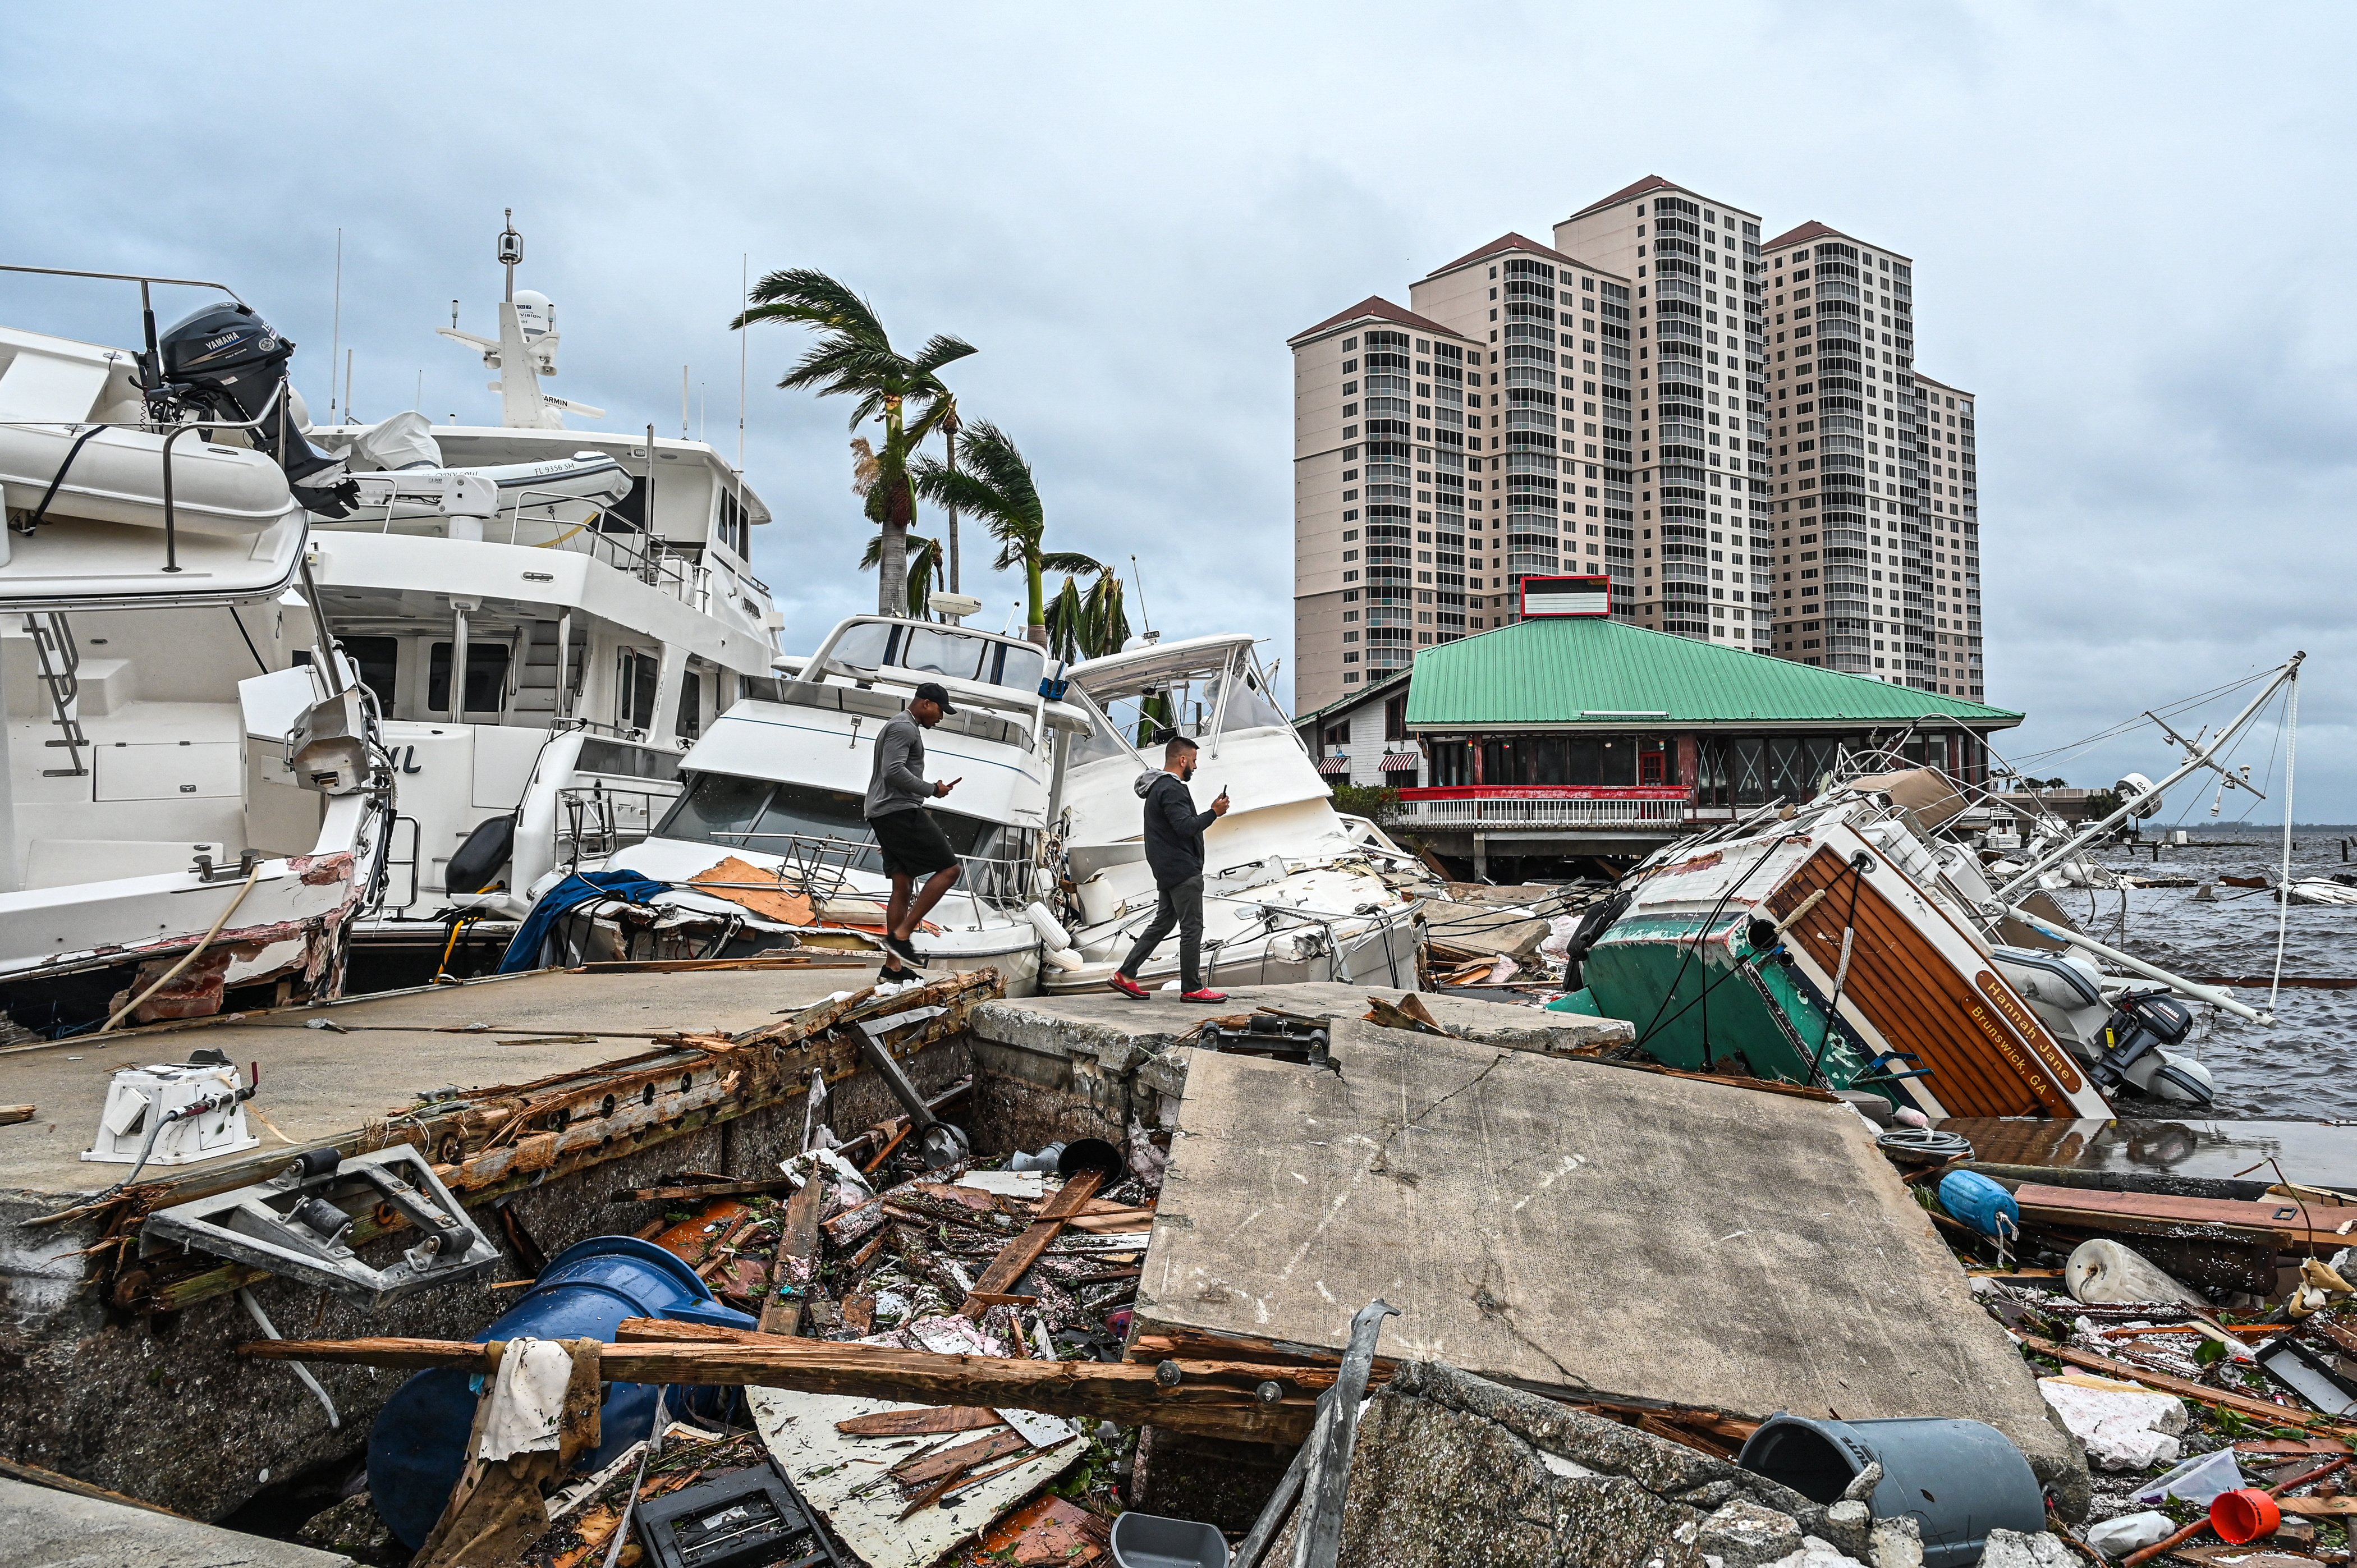 Los residentes inspeccionan los daños a un puerto deportivo mientras los barcos están parcialmente sumergidos tras el paso del huracán Ian en Fort Myers, Florida, el 29 de septiembre de 2022. (Giorgio VIERA / AFP)